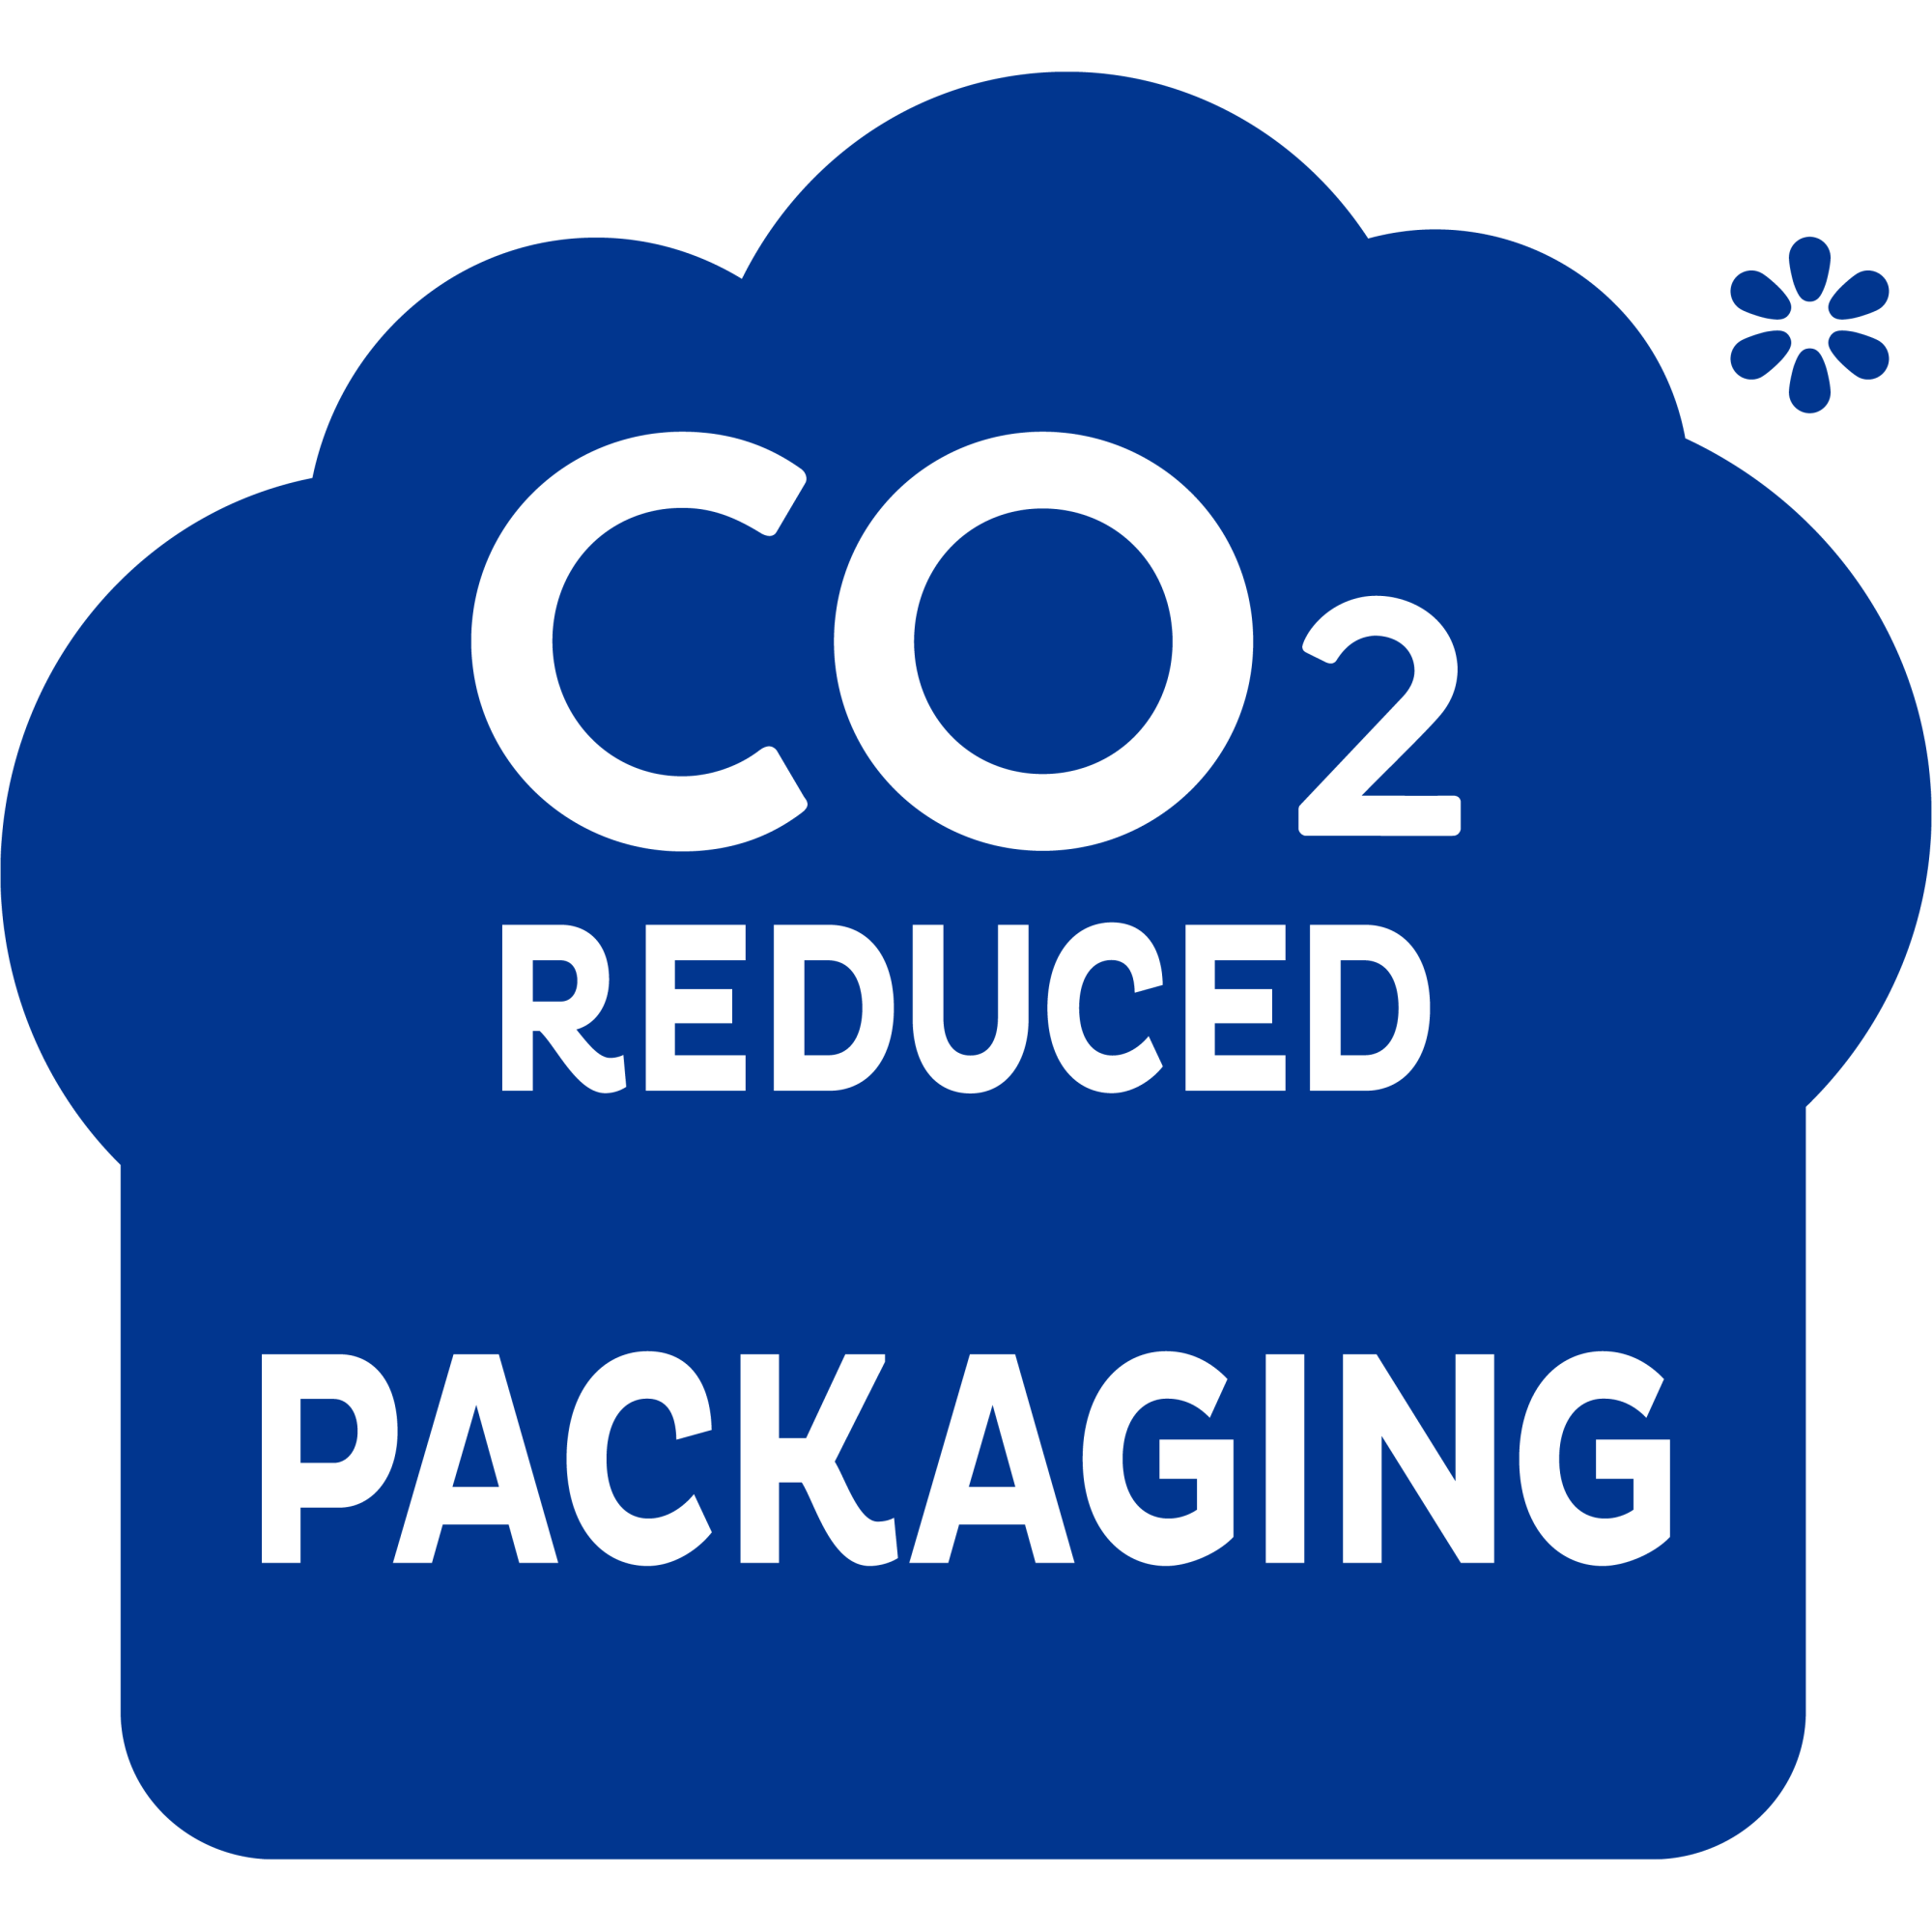 TENA Pants numa embalagem com CO2 reduzido, um passo na direção certa